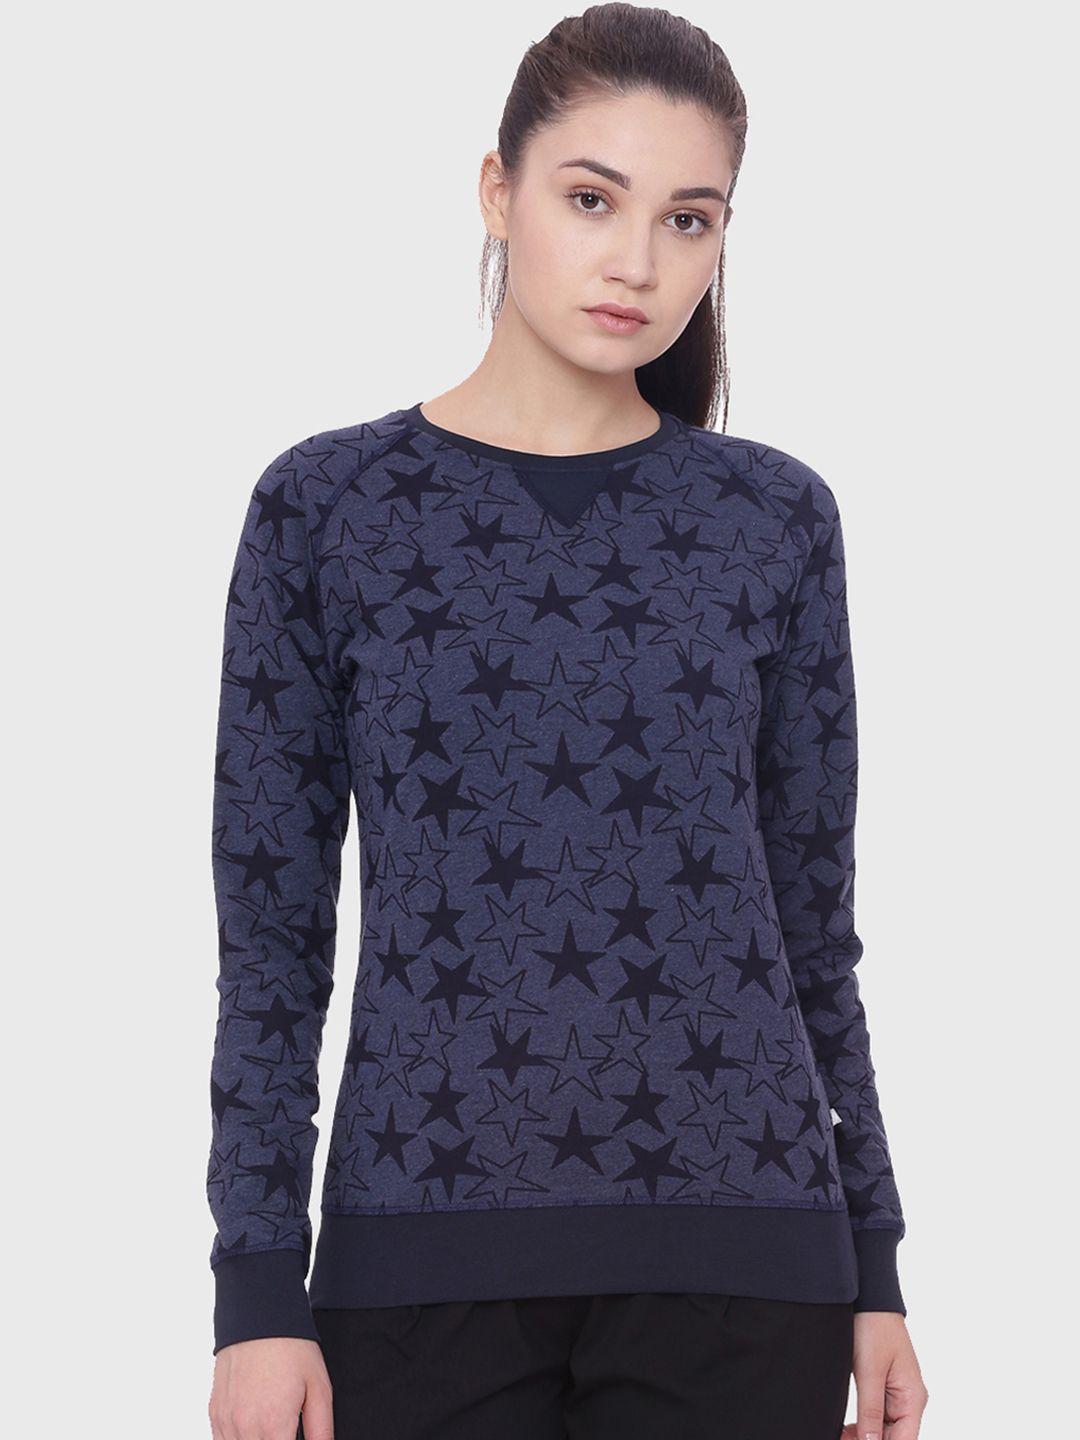 soul space women navy blue printed sweatshirt